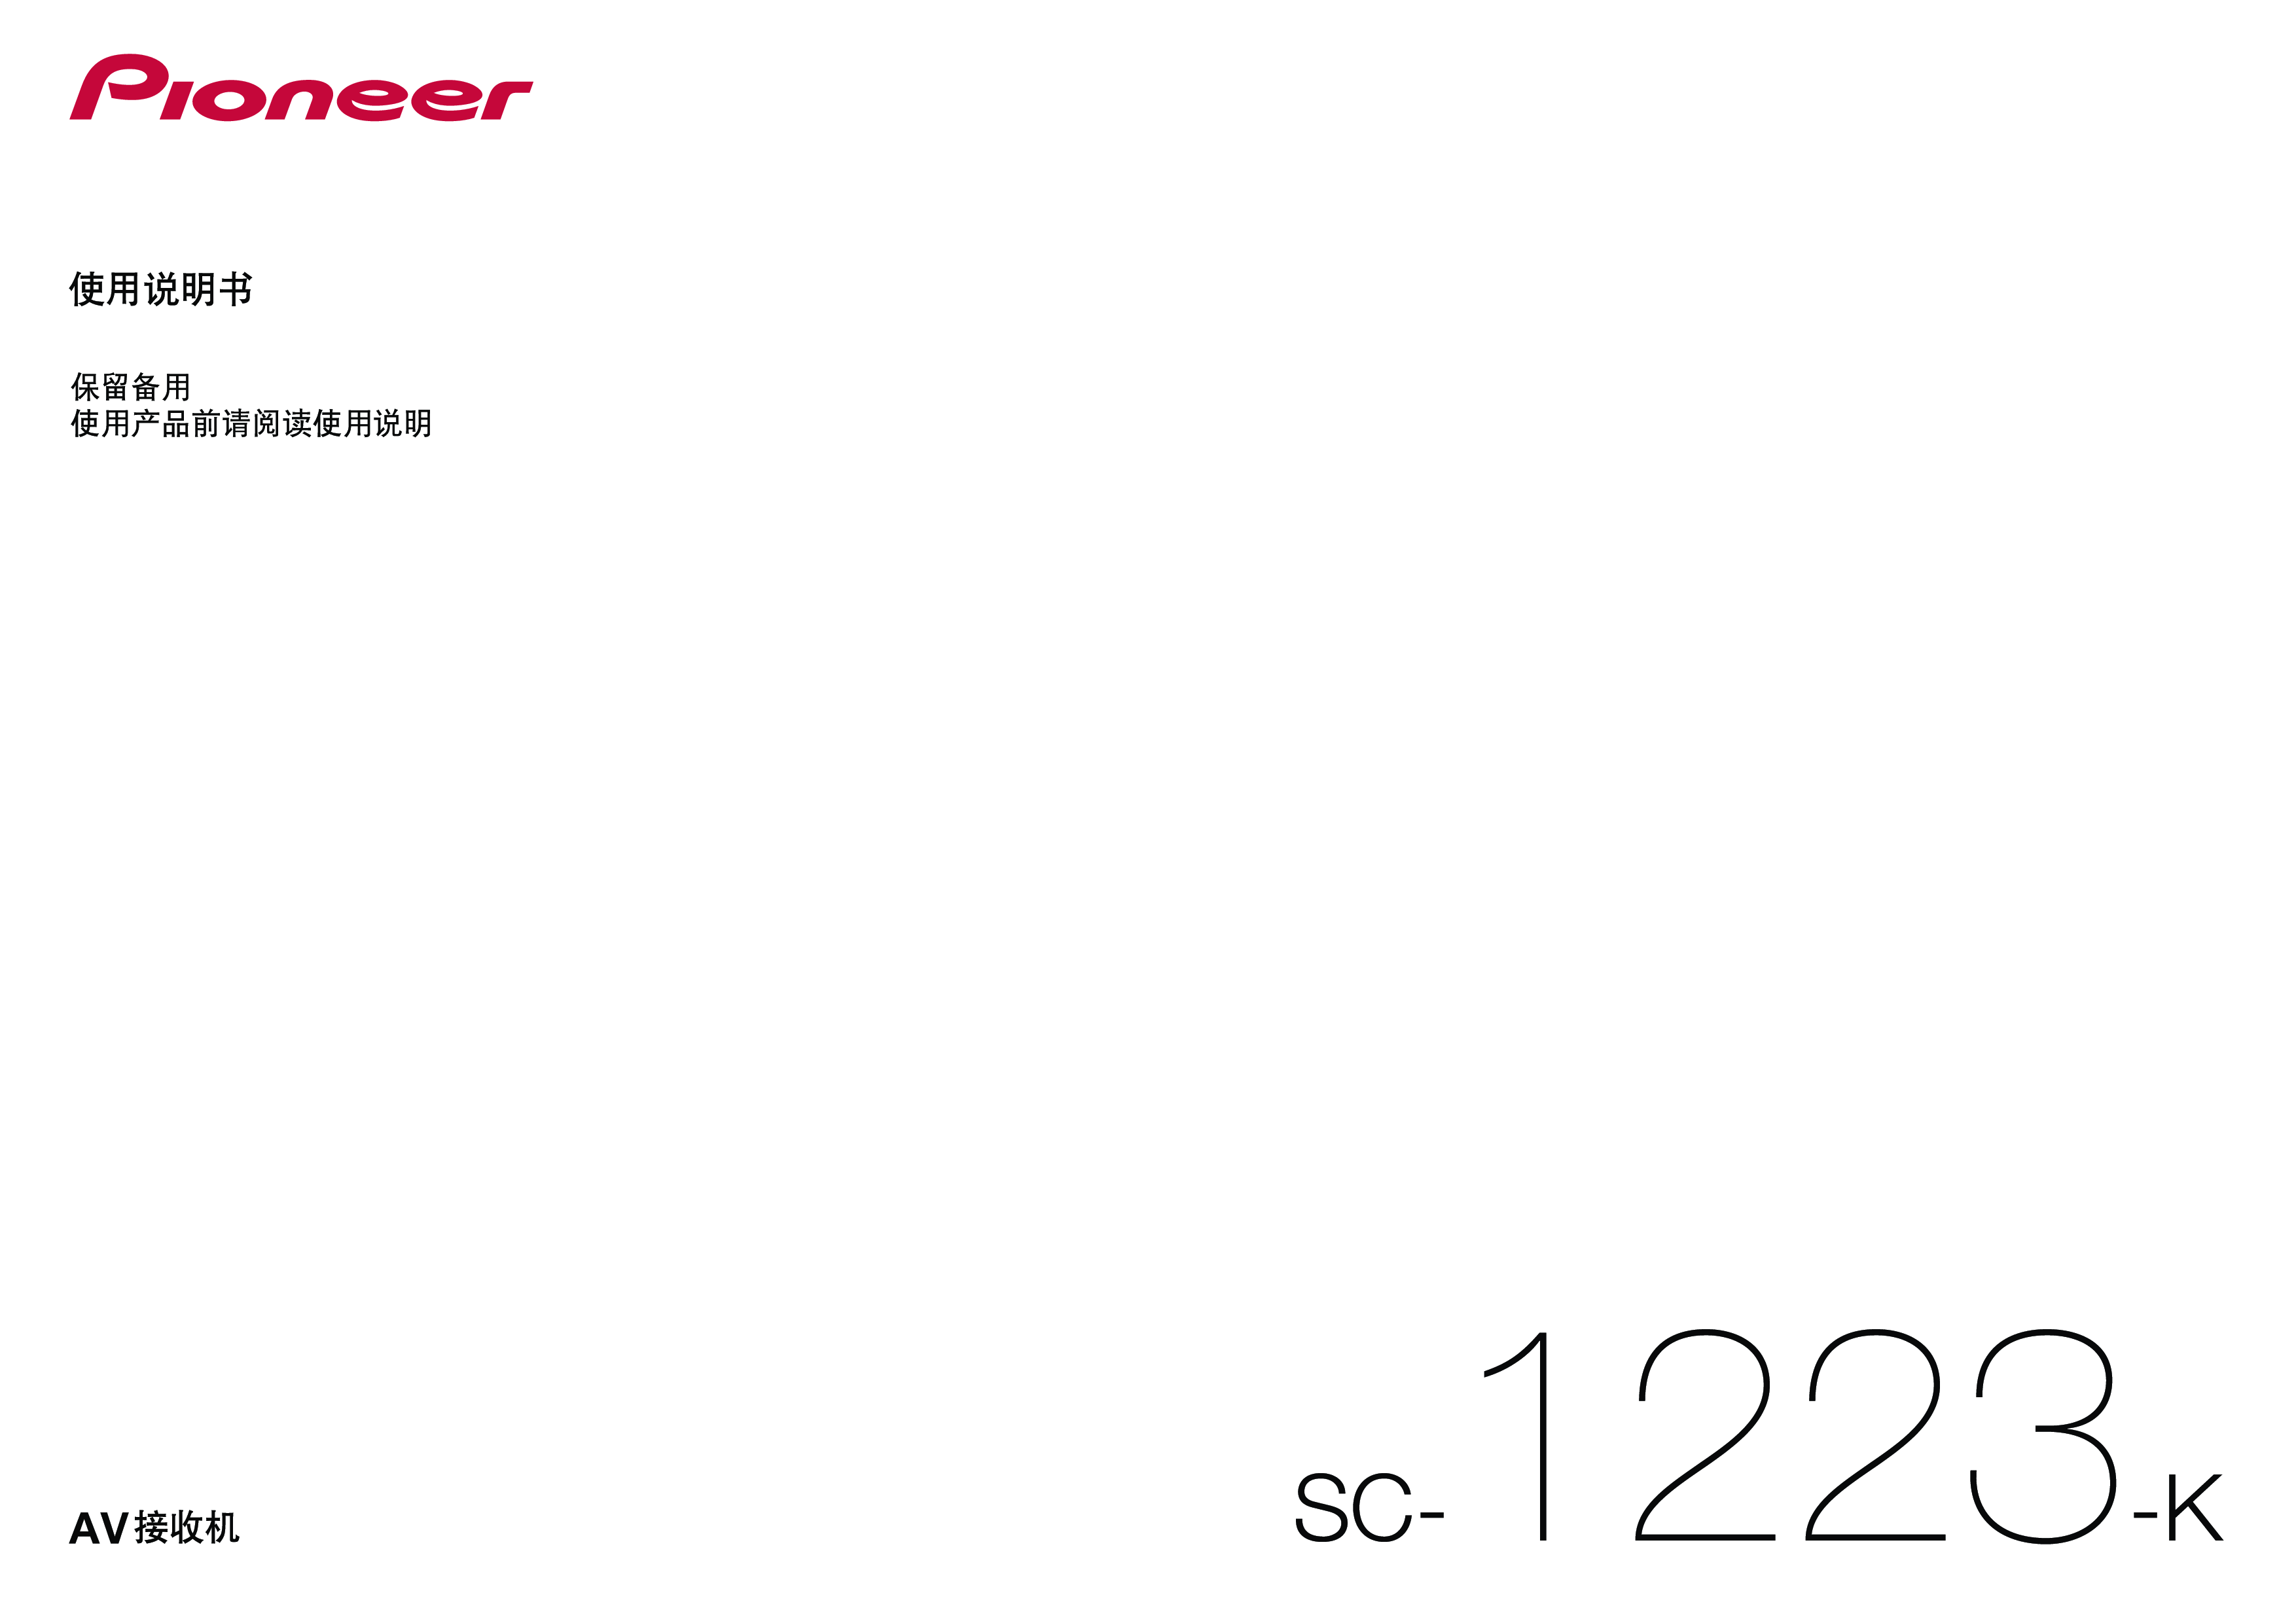 先锋 Pioneer SC-1223-K 使用说明书 封面